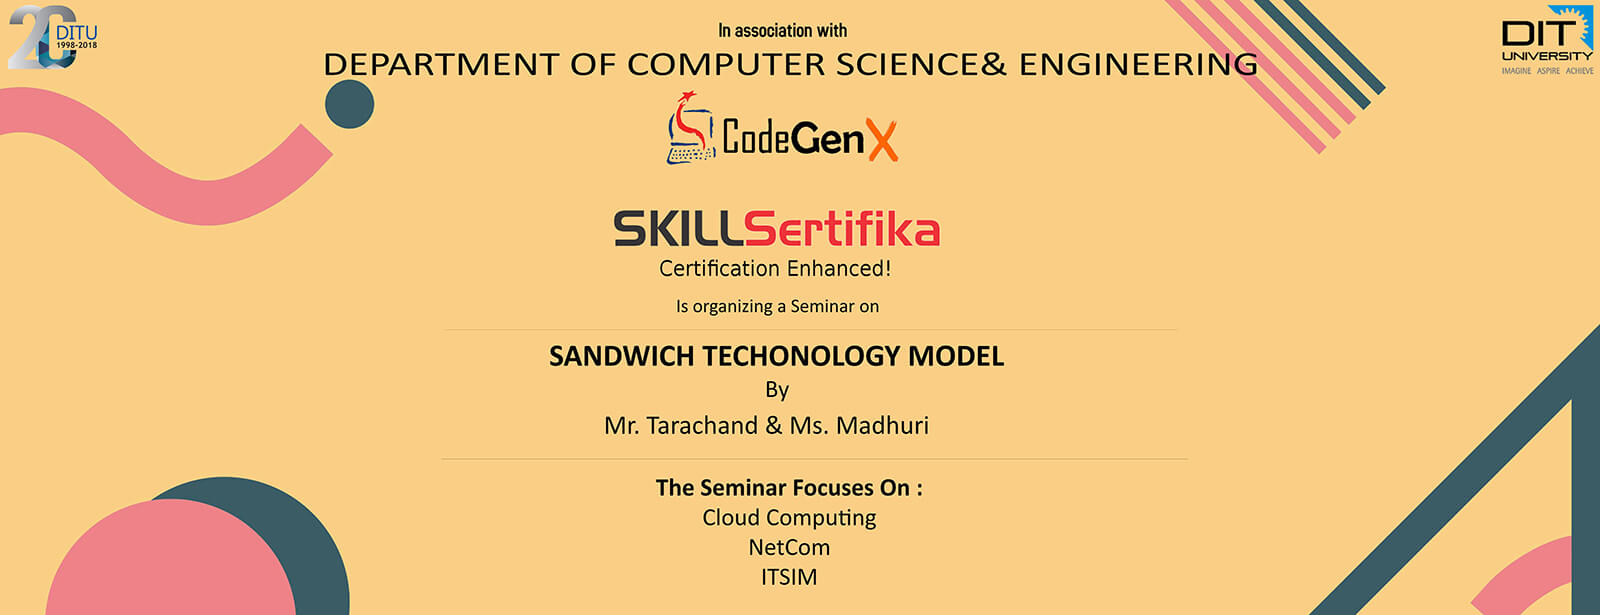 Seminar on "Sandwich Technology Model" by SKILLSertfika